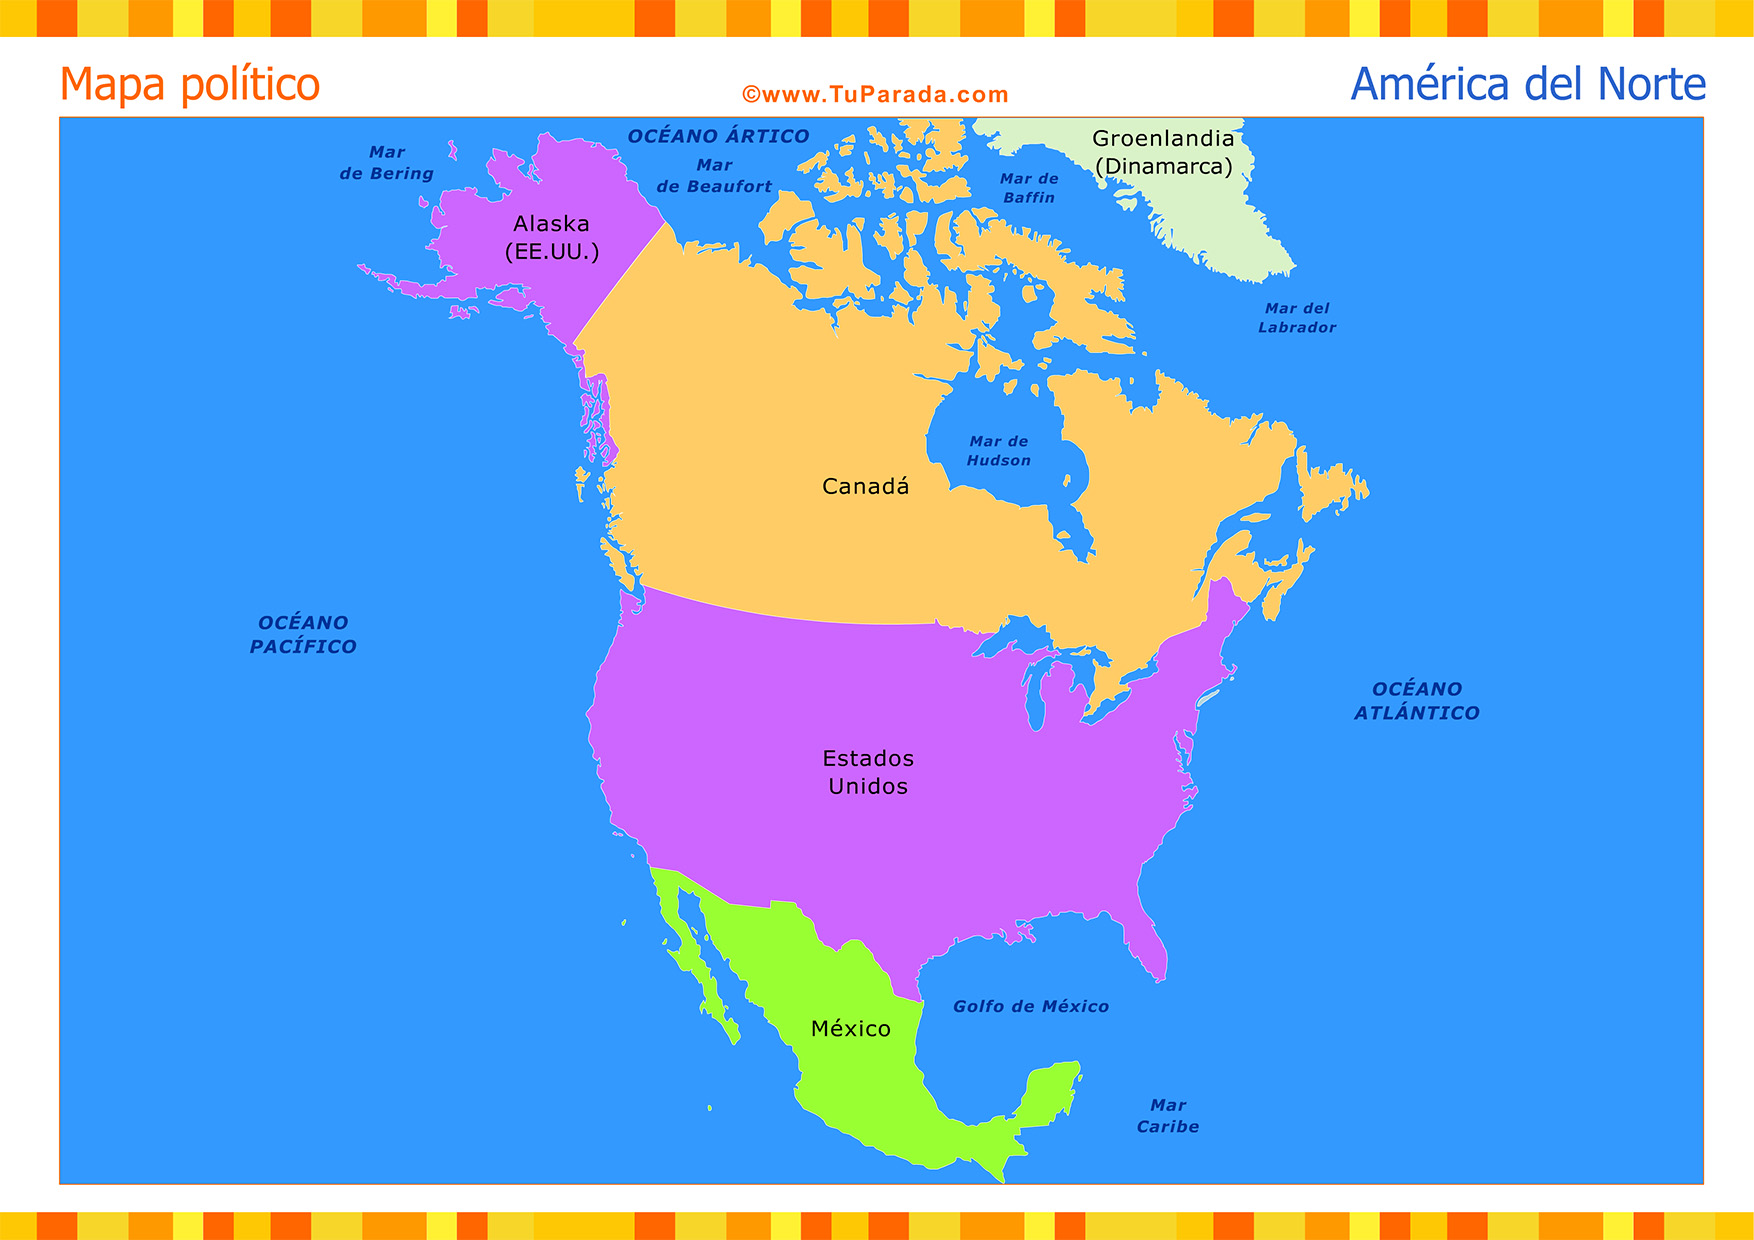 Mapa de América del Norte político